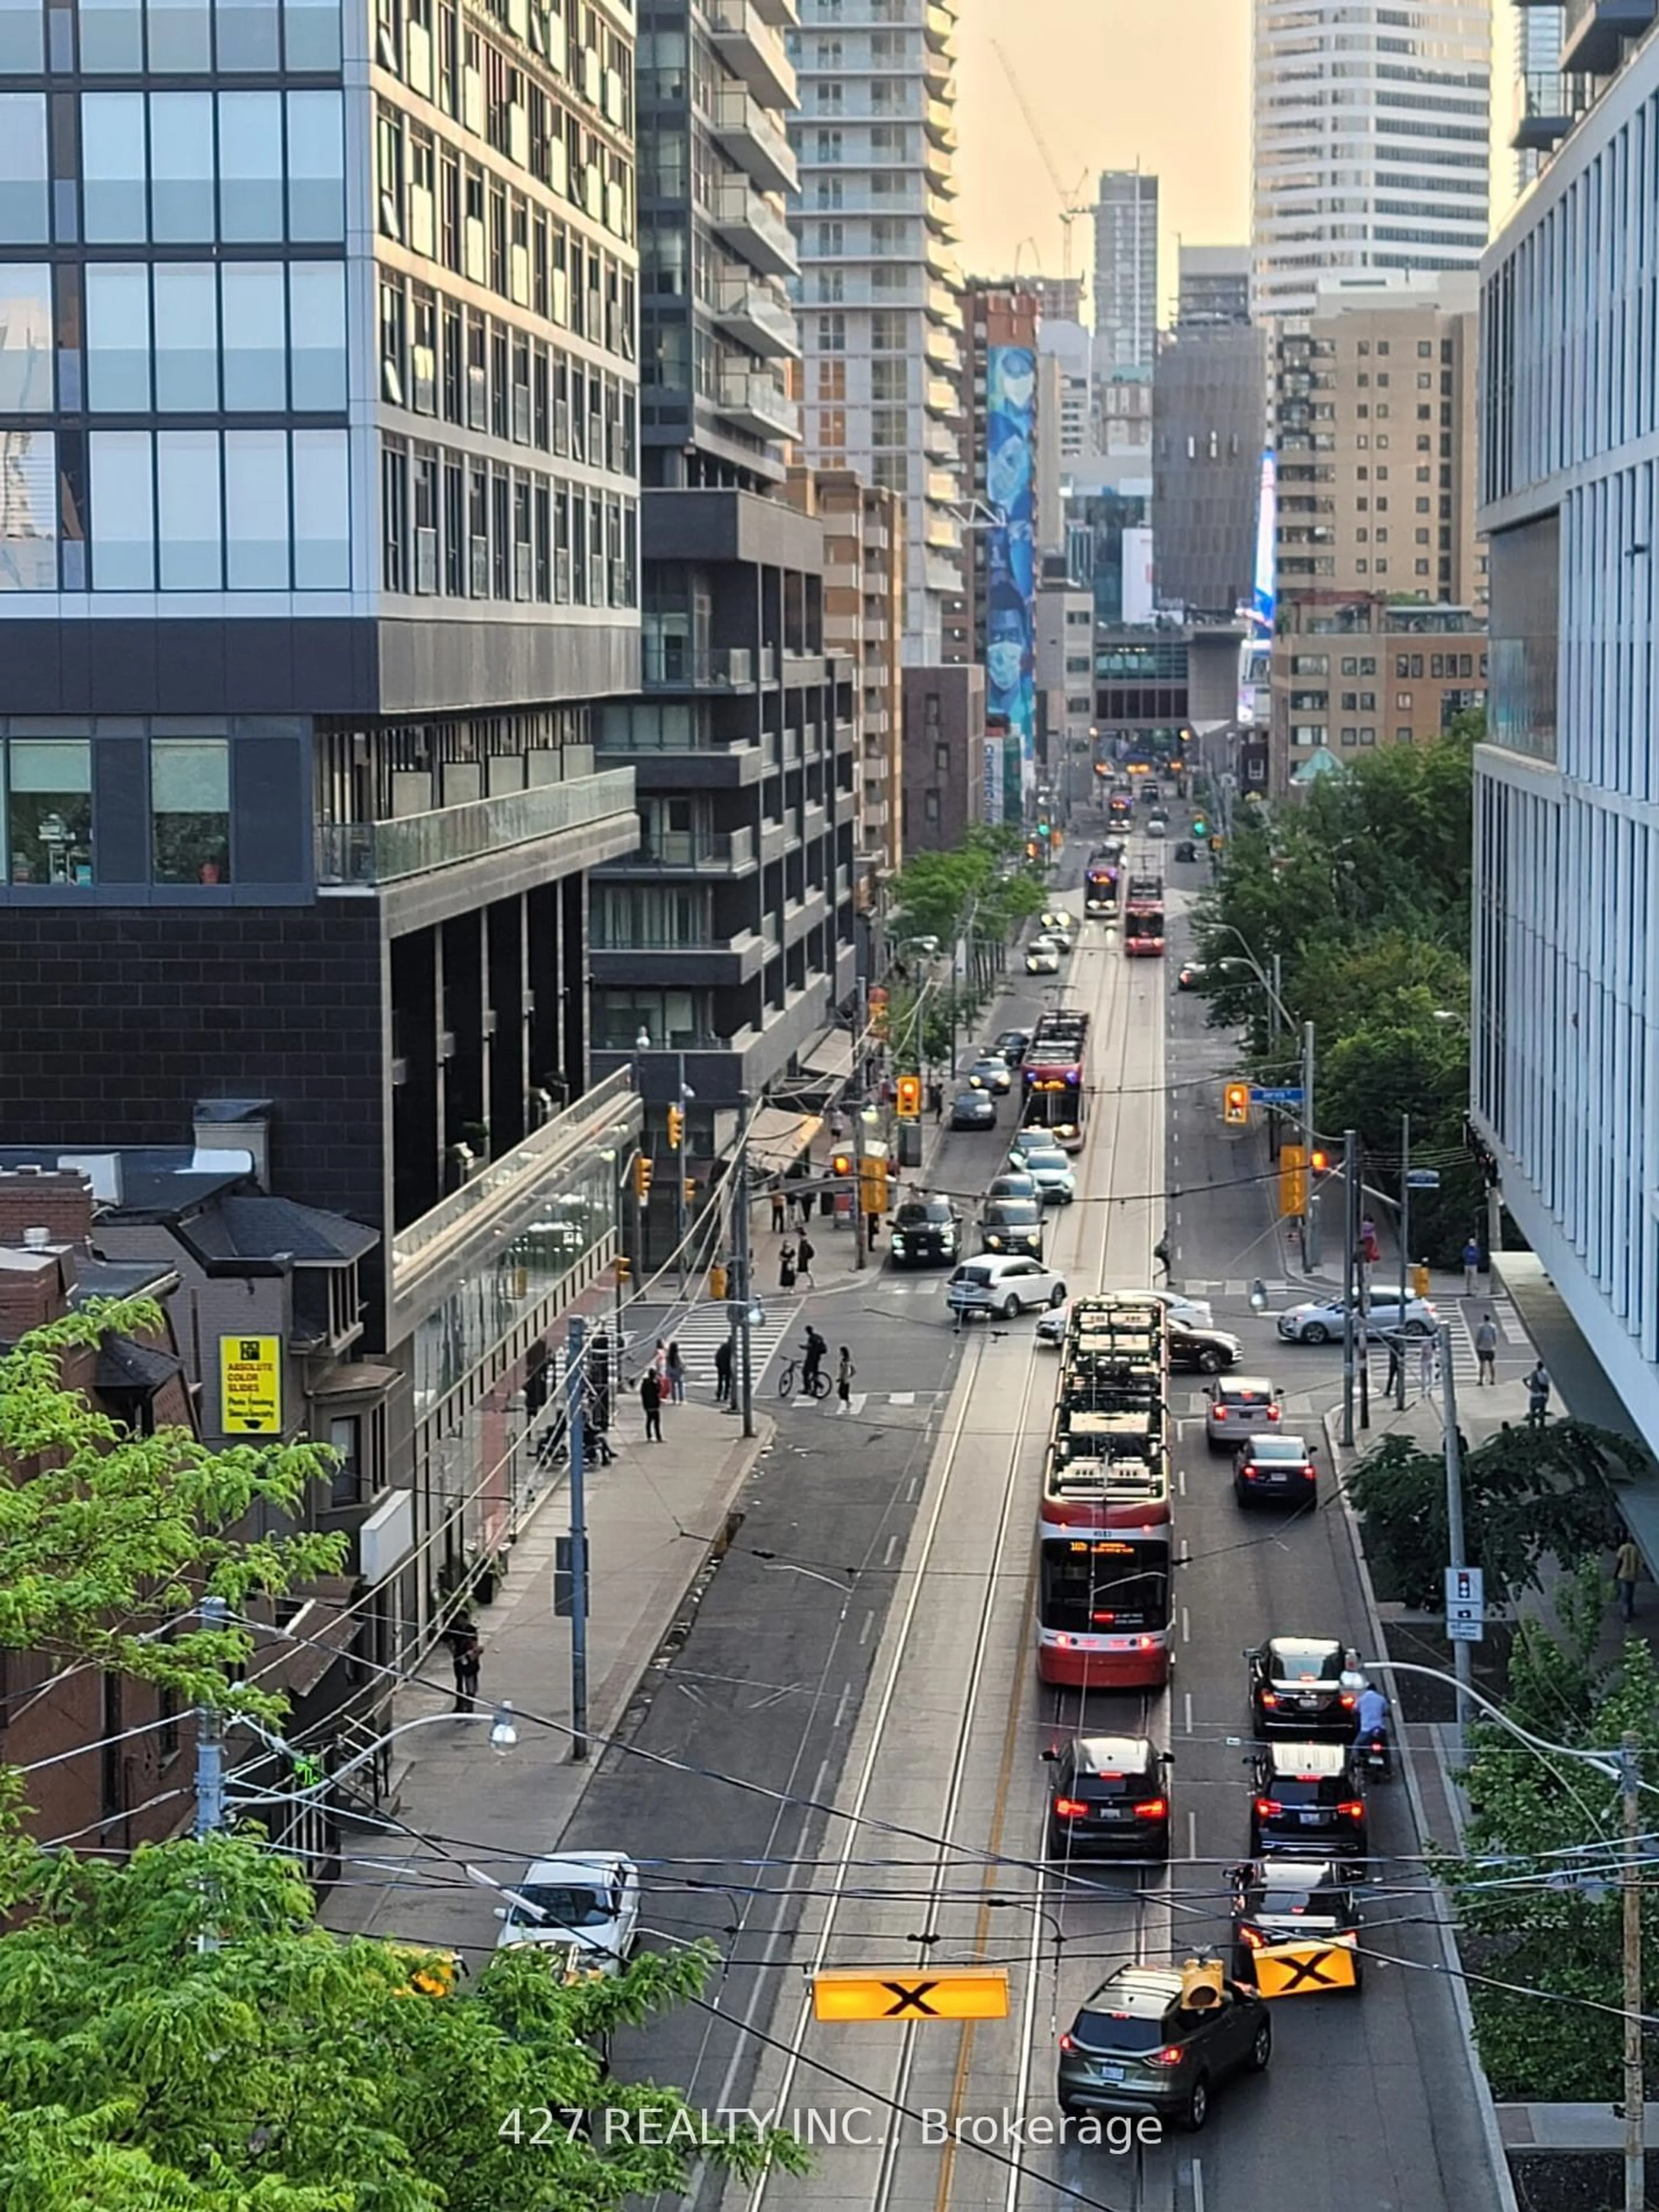 A view of a street for 219 Dundas St #707, Toronto Ontario M5A 0V1